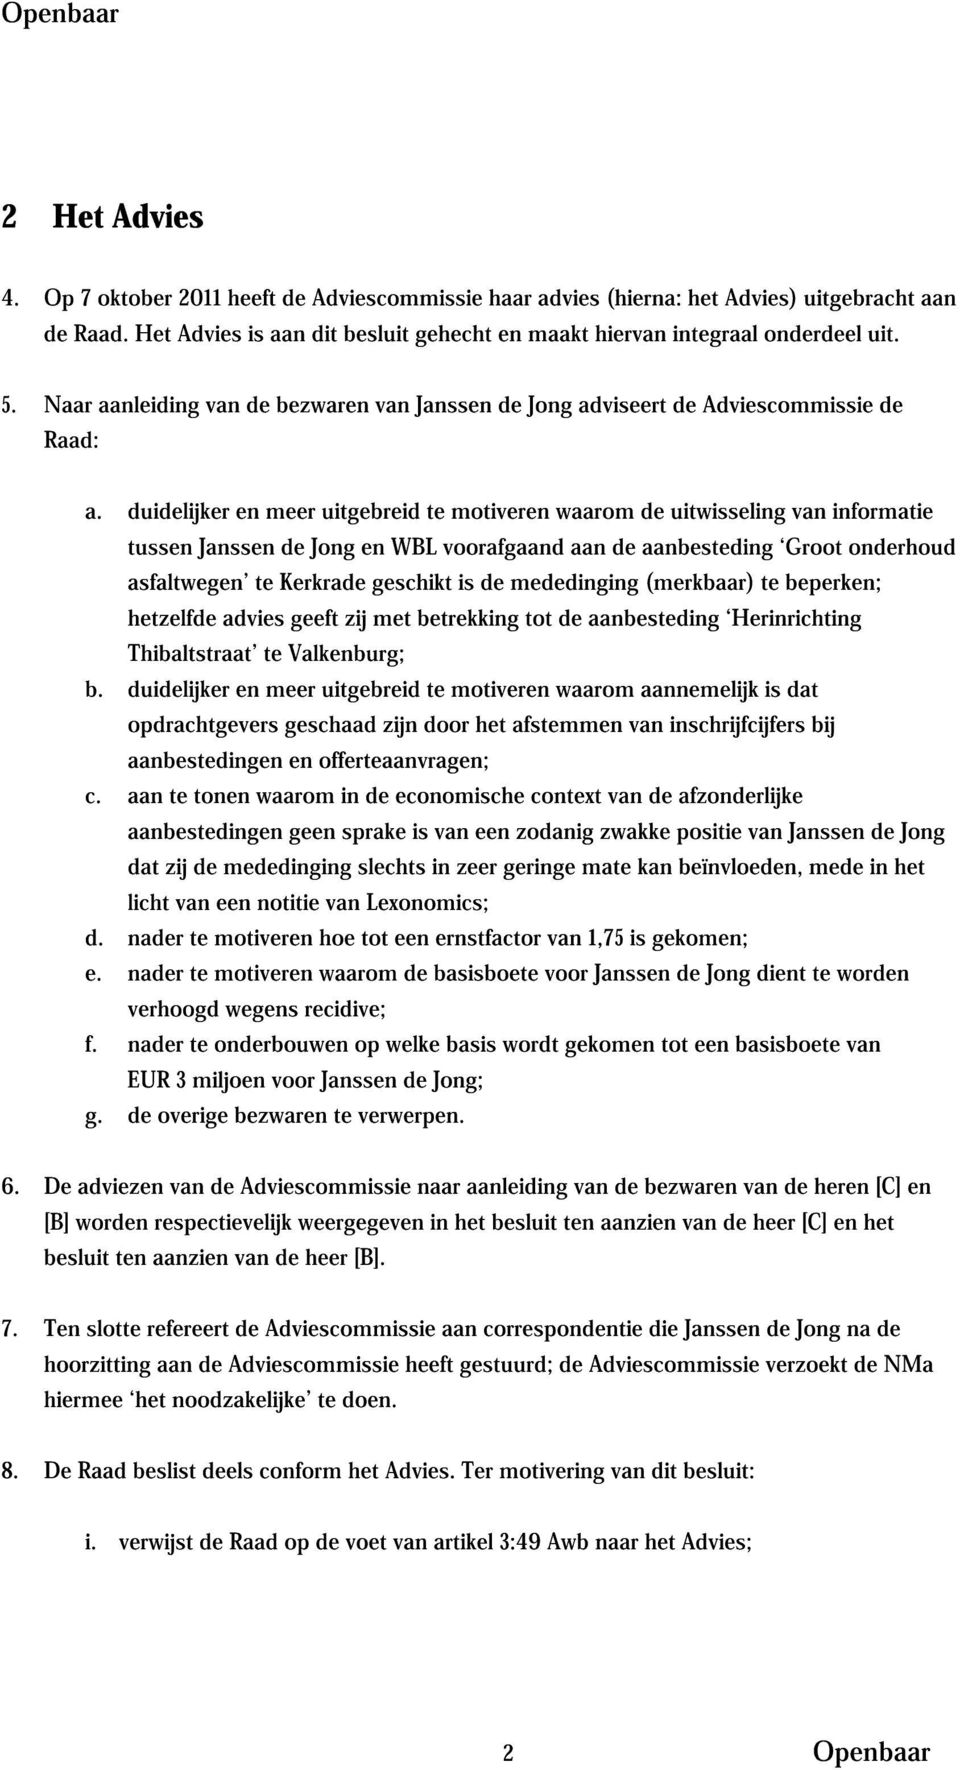 duidelijker en meer uitgebreid te motiveren waarom de uitwisseling van informatie tussen Janssen de Jong en WBL voorafgaand aan de aanbesteding Groot onderhoud asfaltwegen te Kerkrade geschikt is de